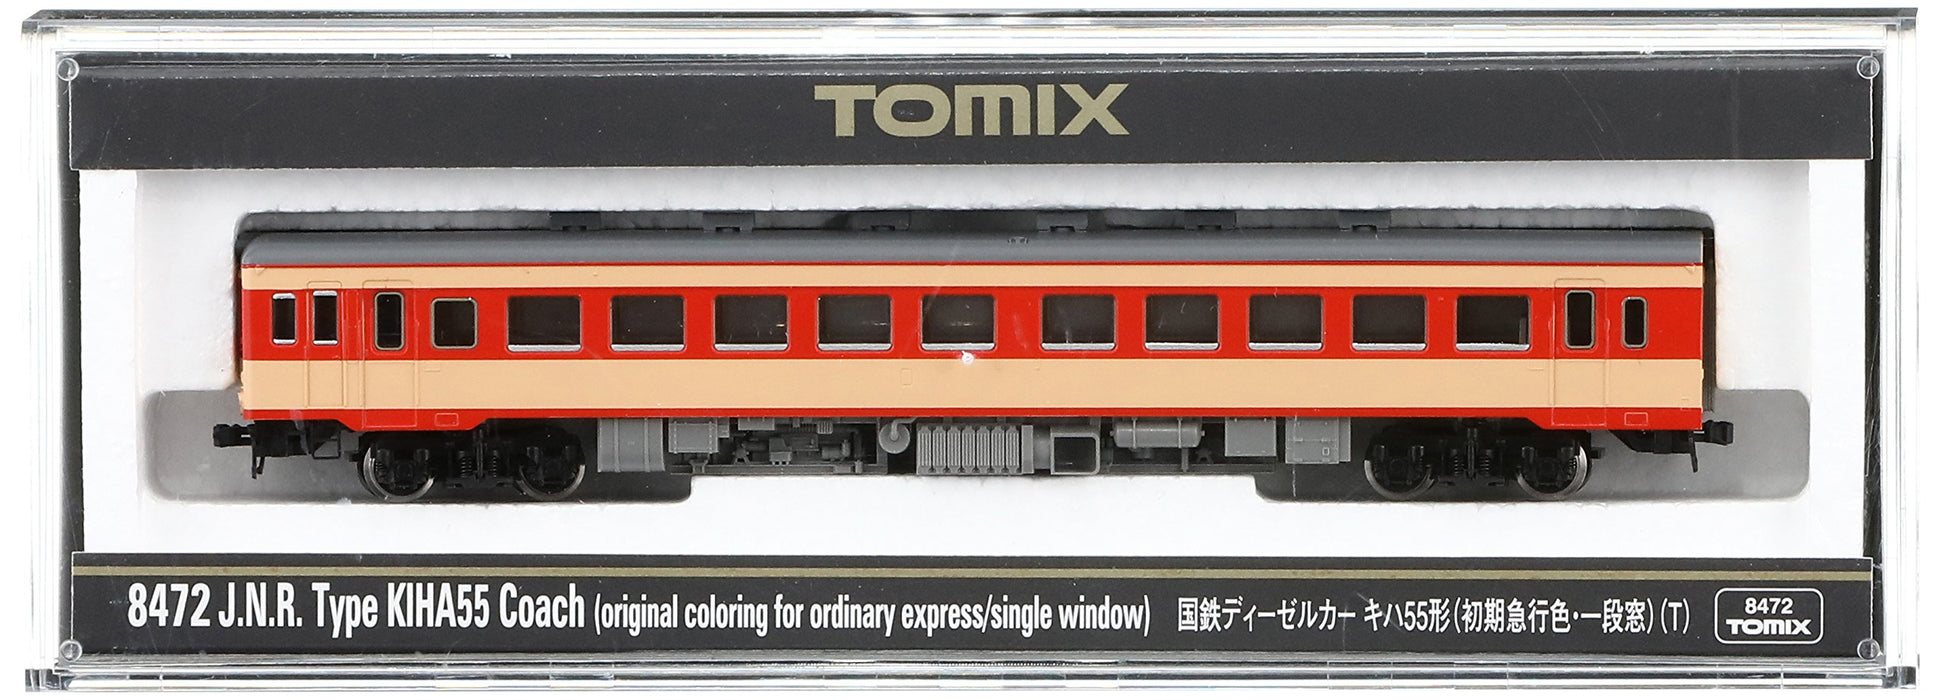 Tomytec Tomix Kiha55 Early Express fenêtre unique jauge N modèle de voiture ferroviaire diesel